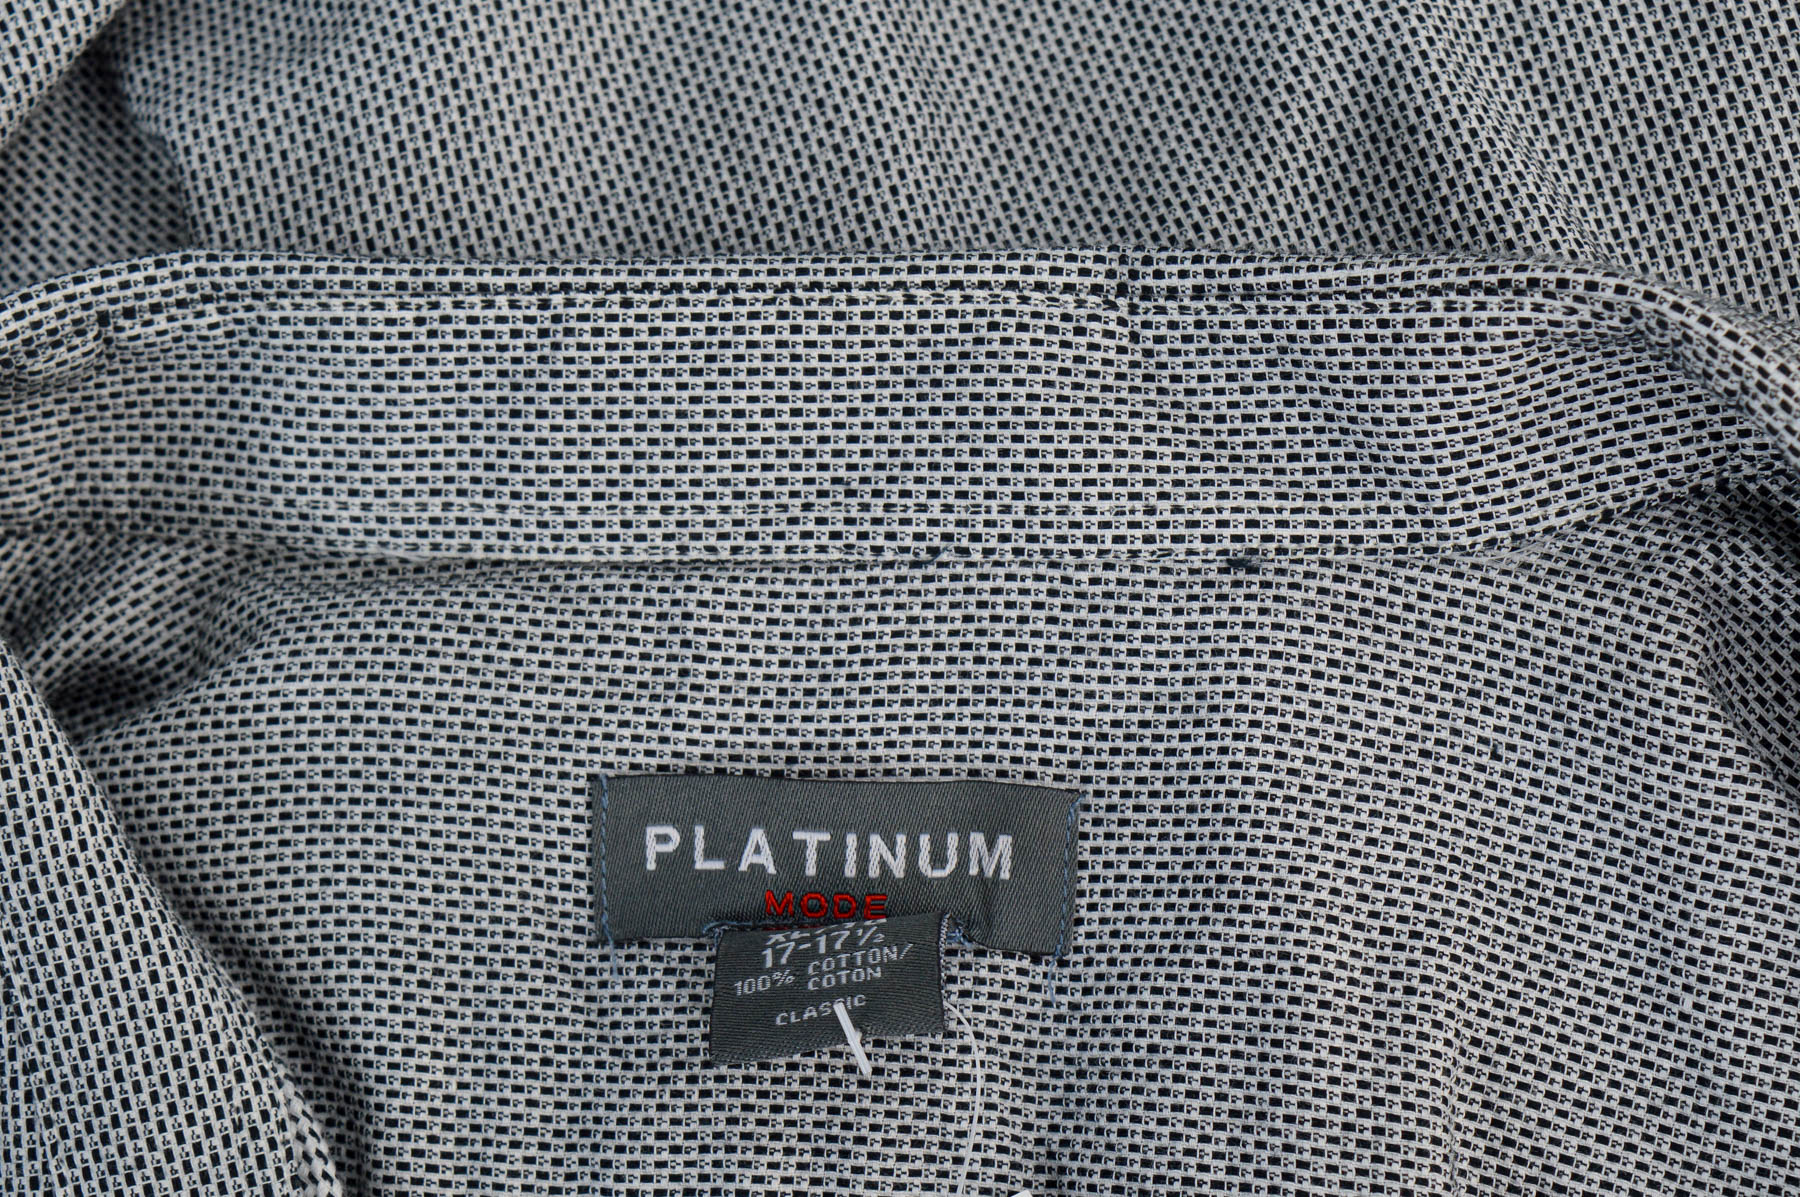 Ανδρικό πουκάμισο - Platinum - 2